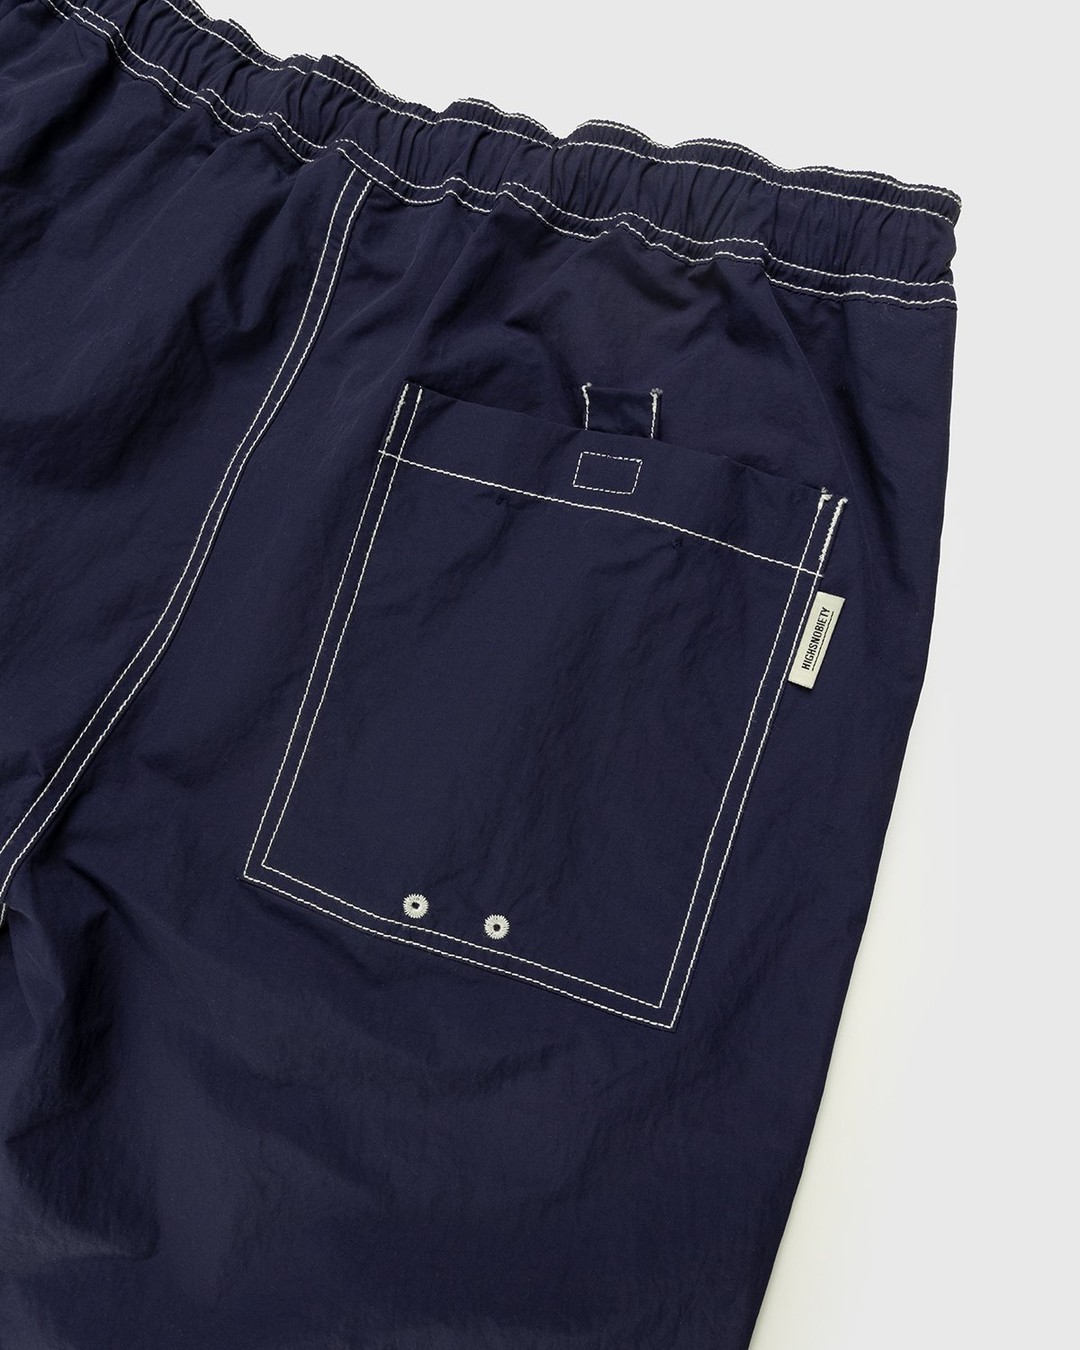 Highsnobiety – Contrast Brushed Nylon Elastic Pants Navy - Pants - Blue - Image 3